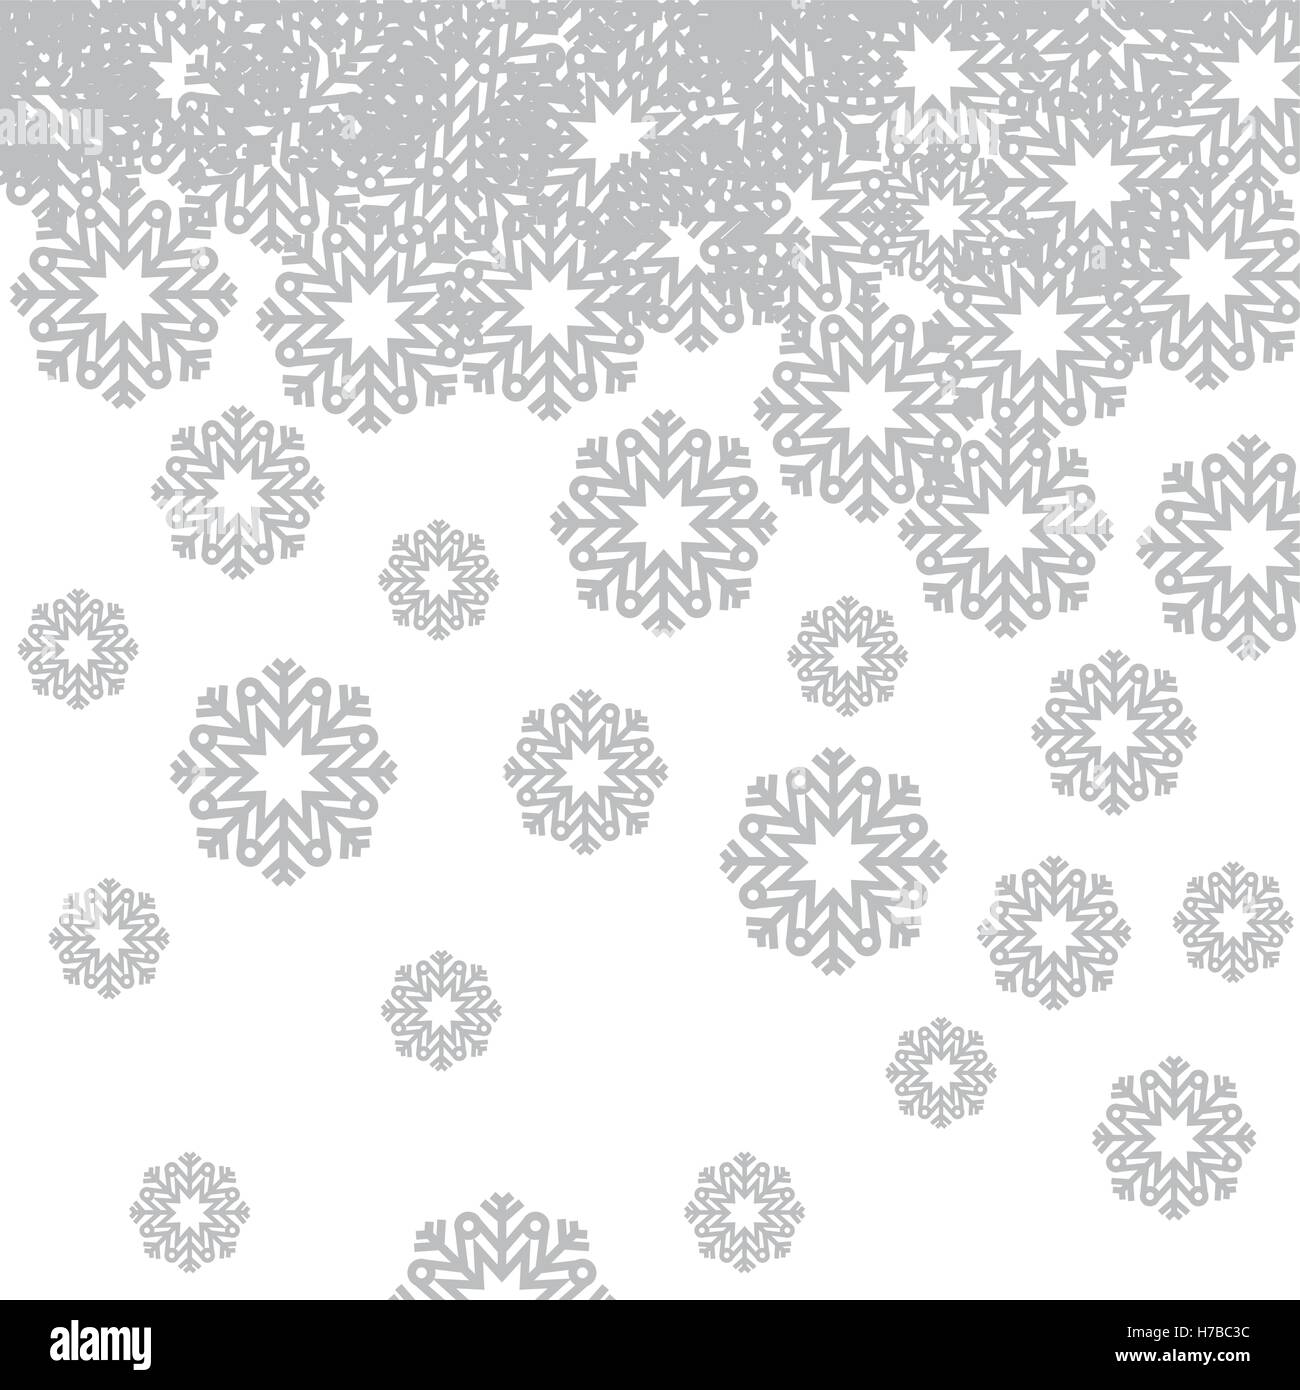 Hintergrund einer Schneeflocke der Saison Weihnachtsmotiv. Vektor-illustration Stock Vektor